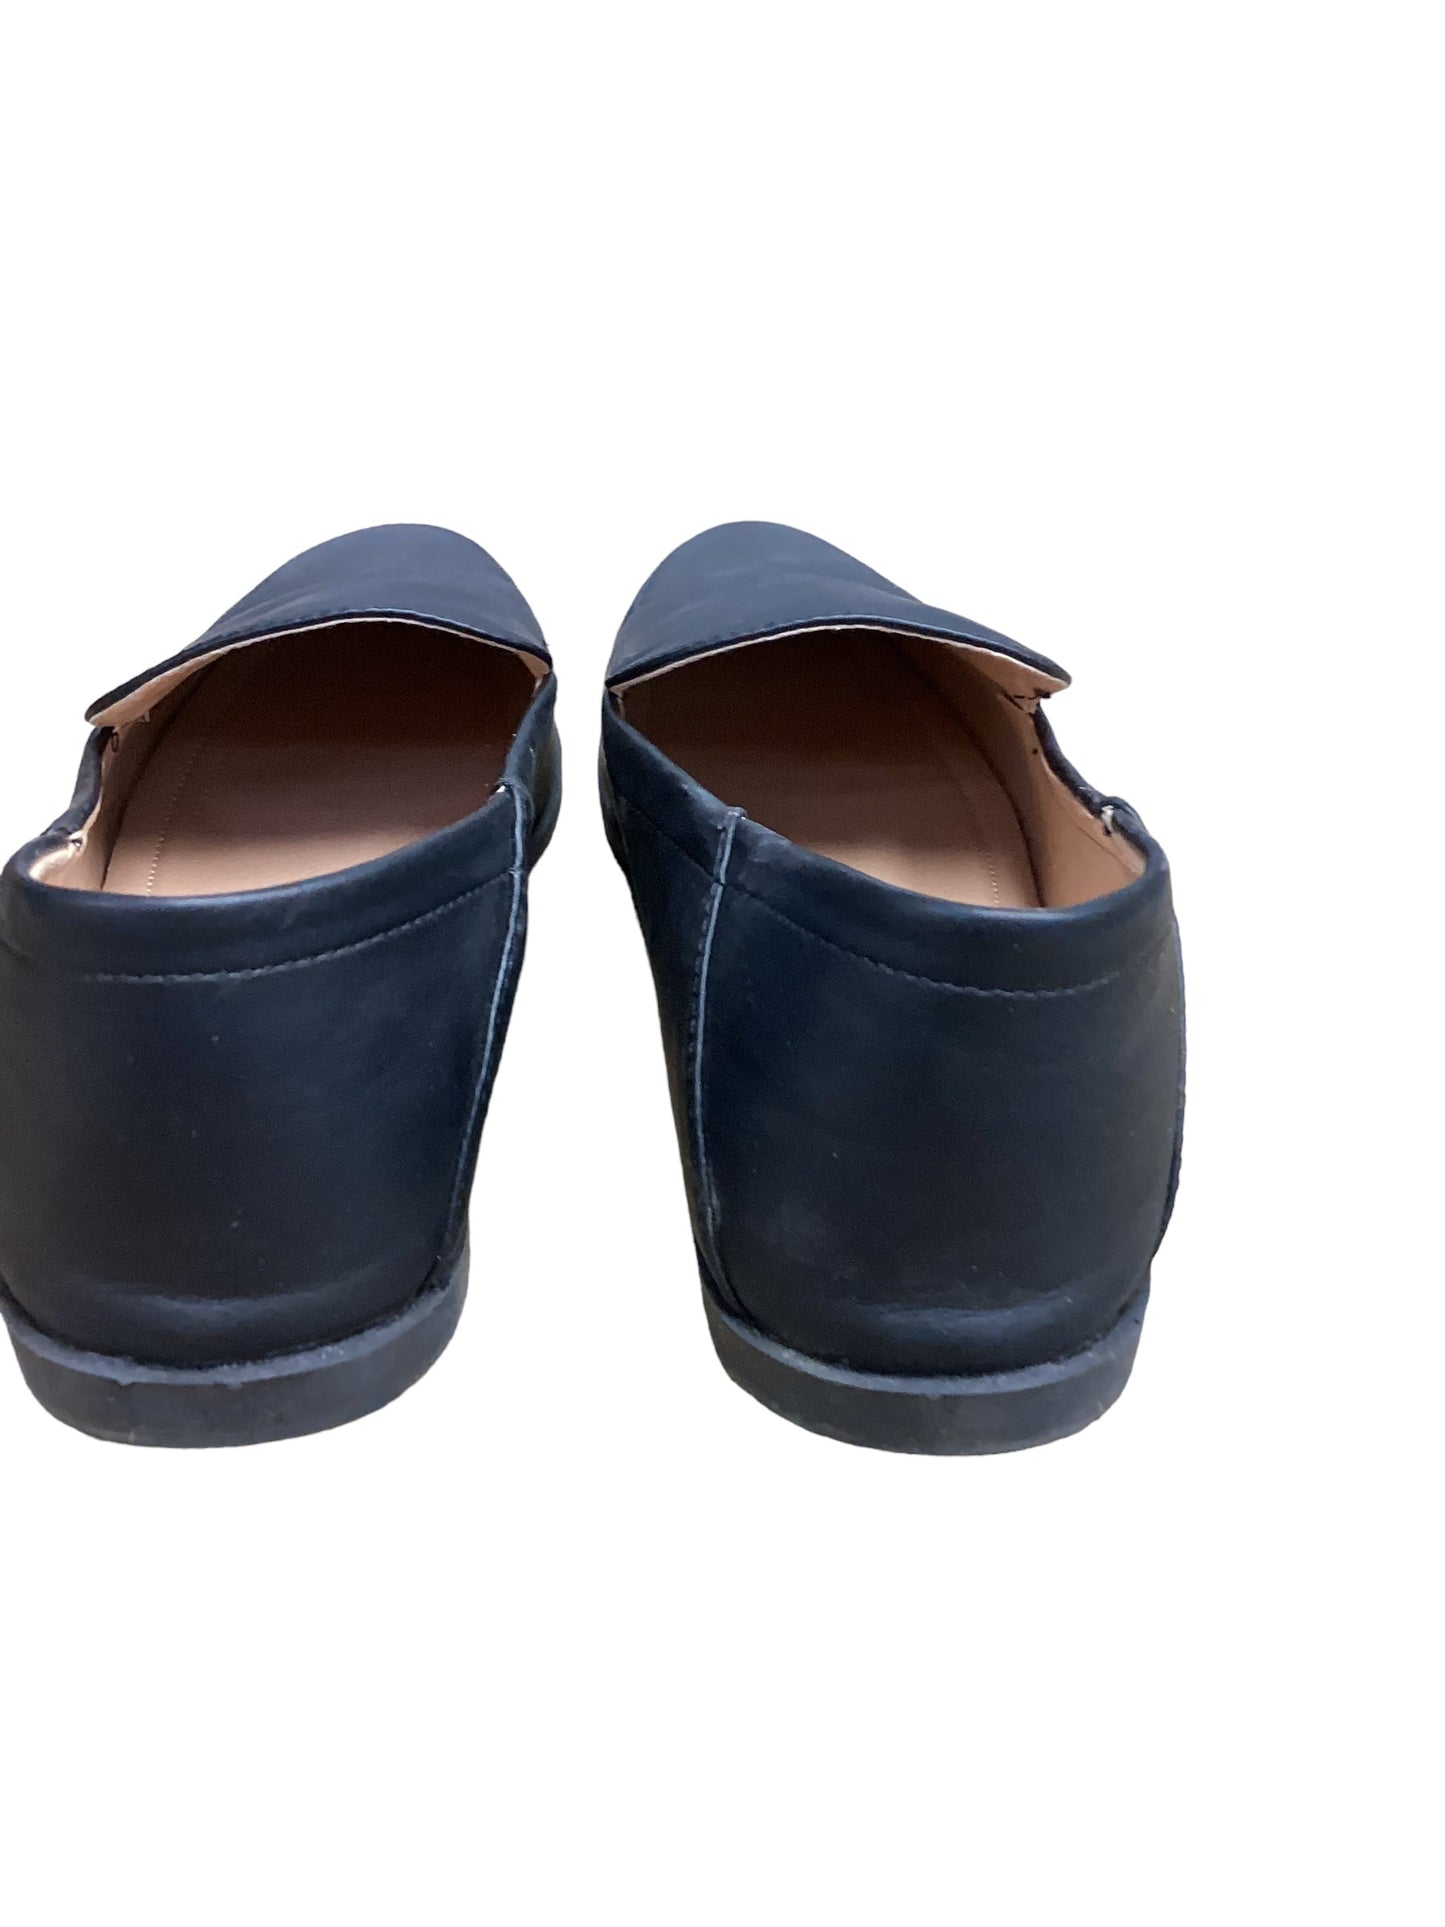 Black Shoes Flats Cme, Size 8